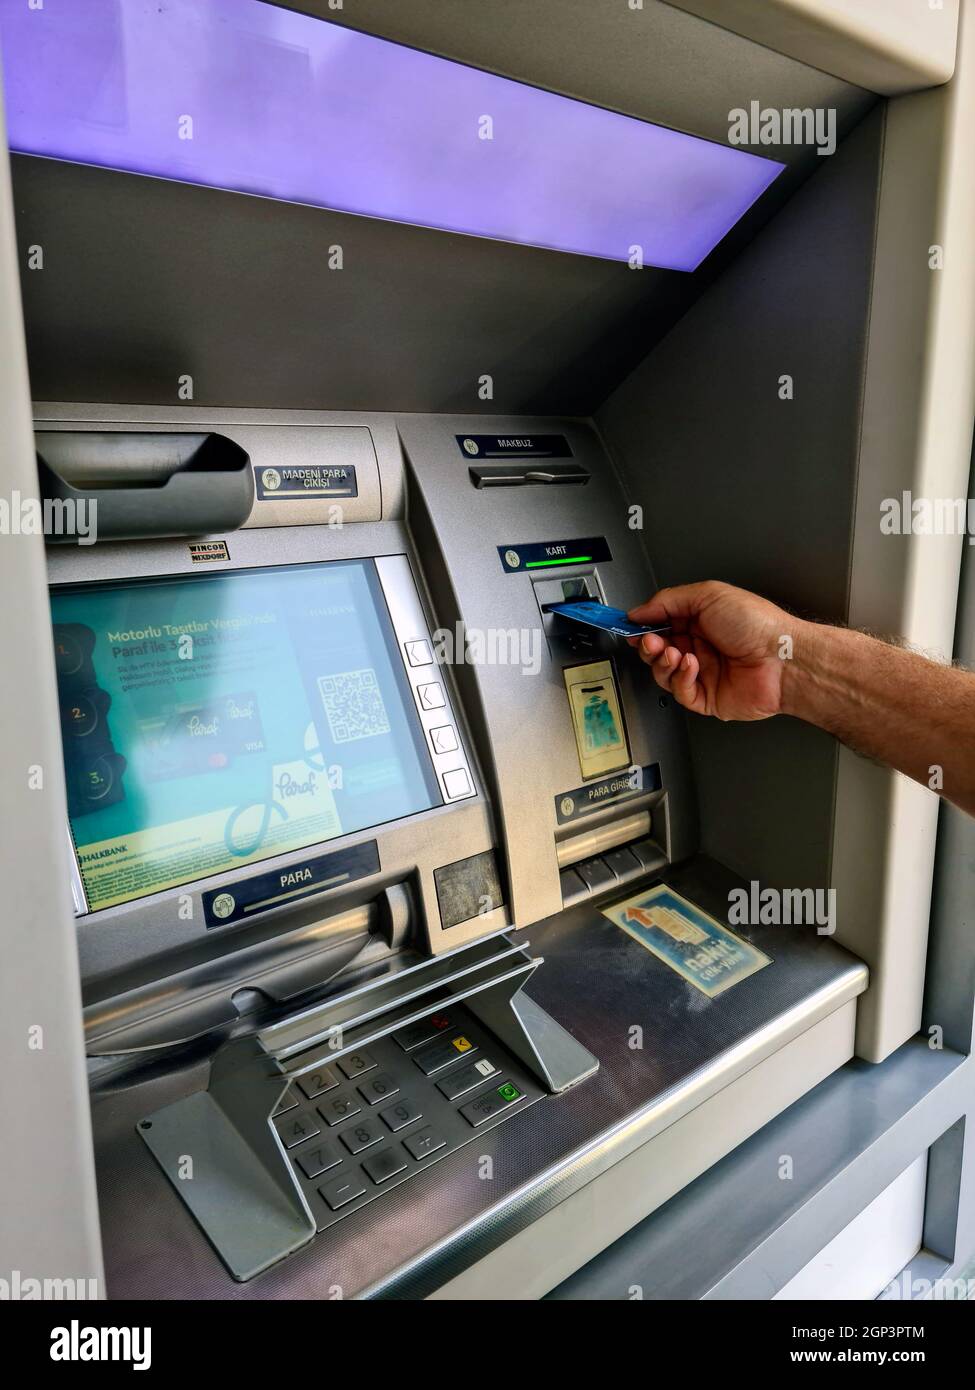 La main de l'homme retire son salaire du guichet automatique Banque D'Images